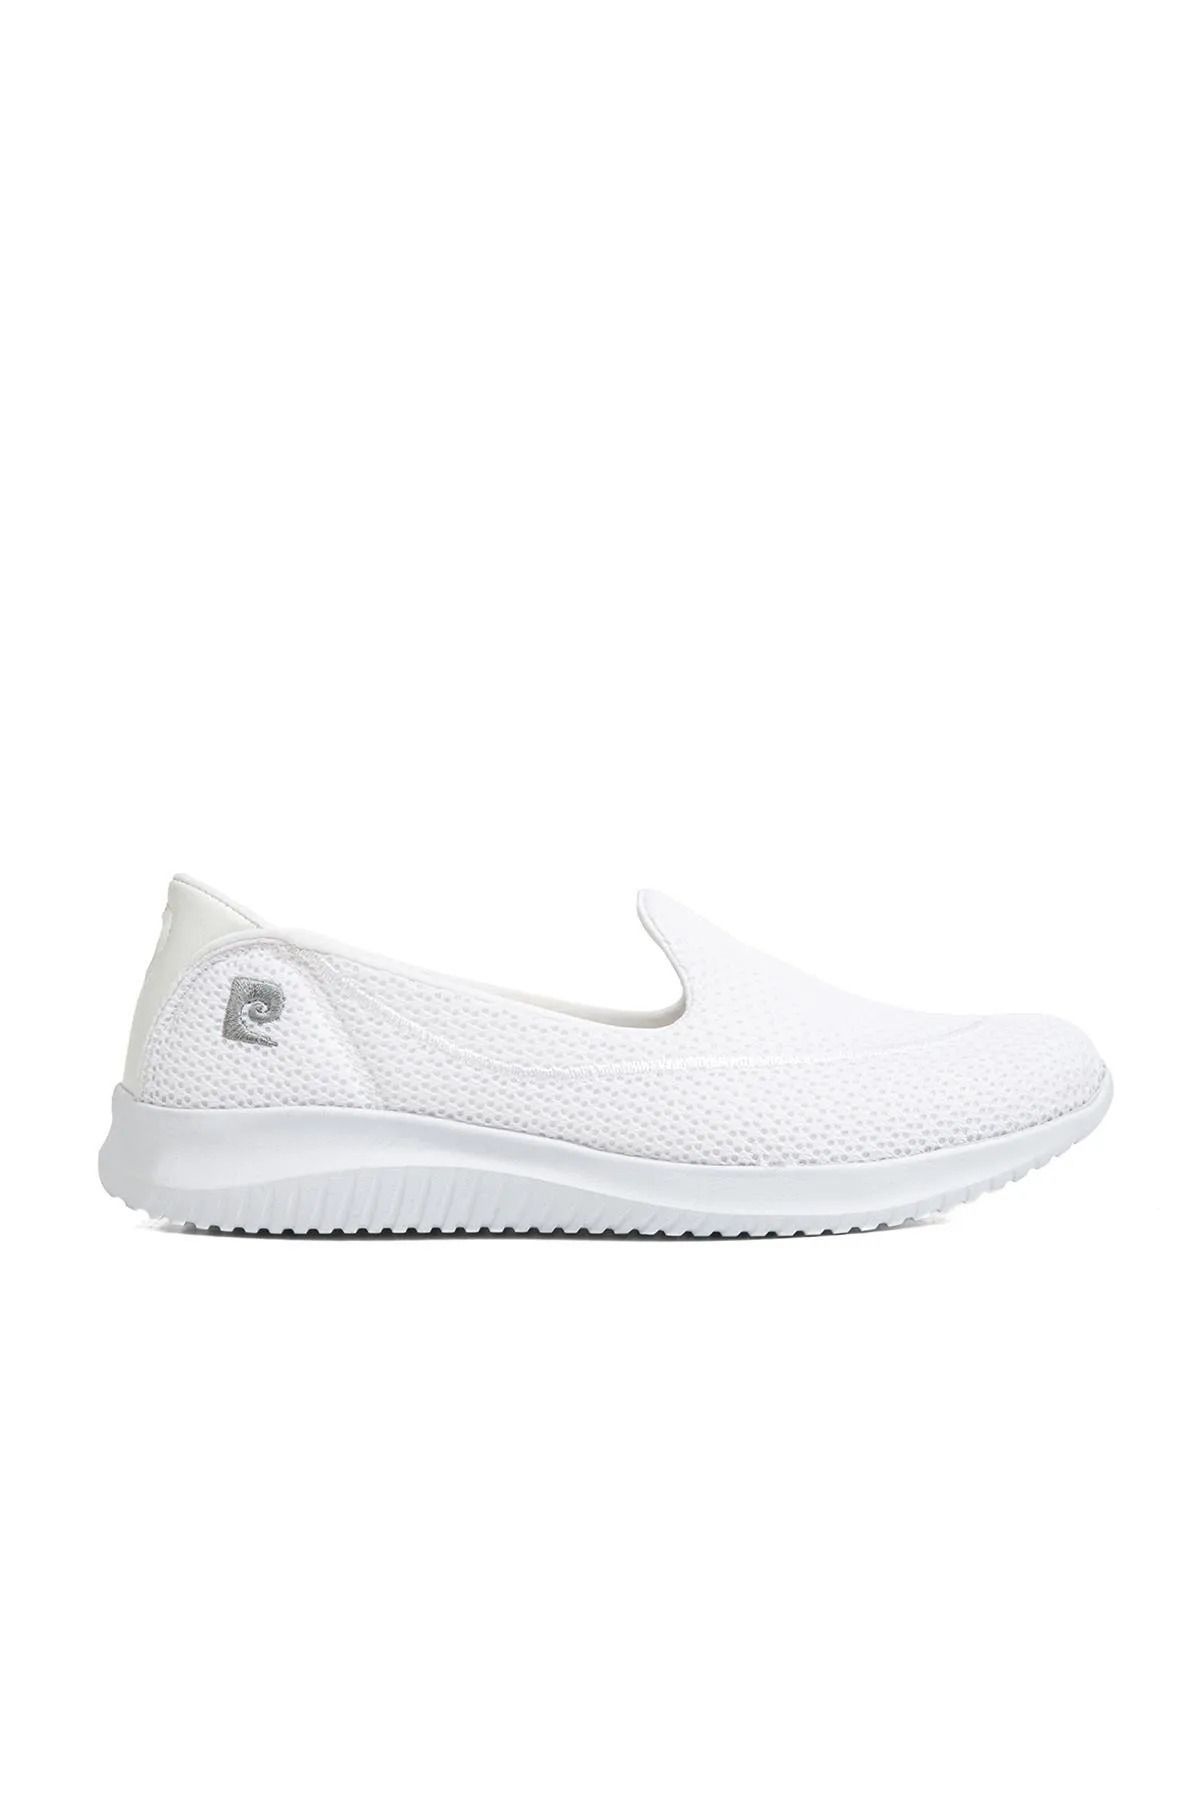 Pierre Cardin Pc-30168 Beyaz Kadın Sneaker Günlük Bağsız Spor